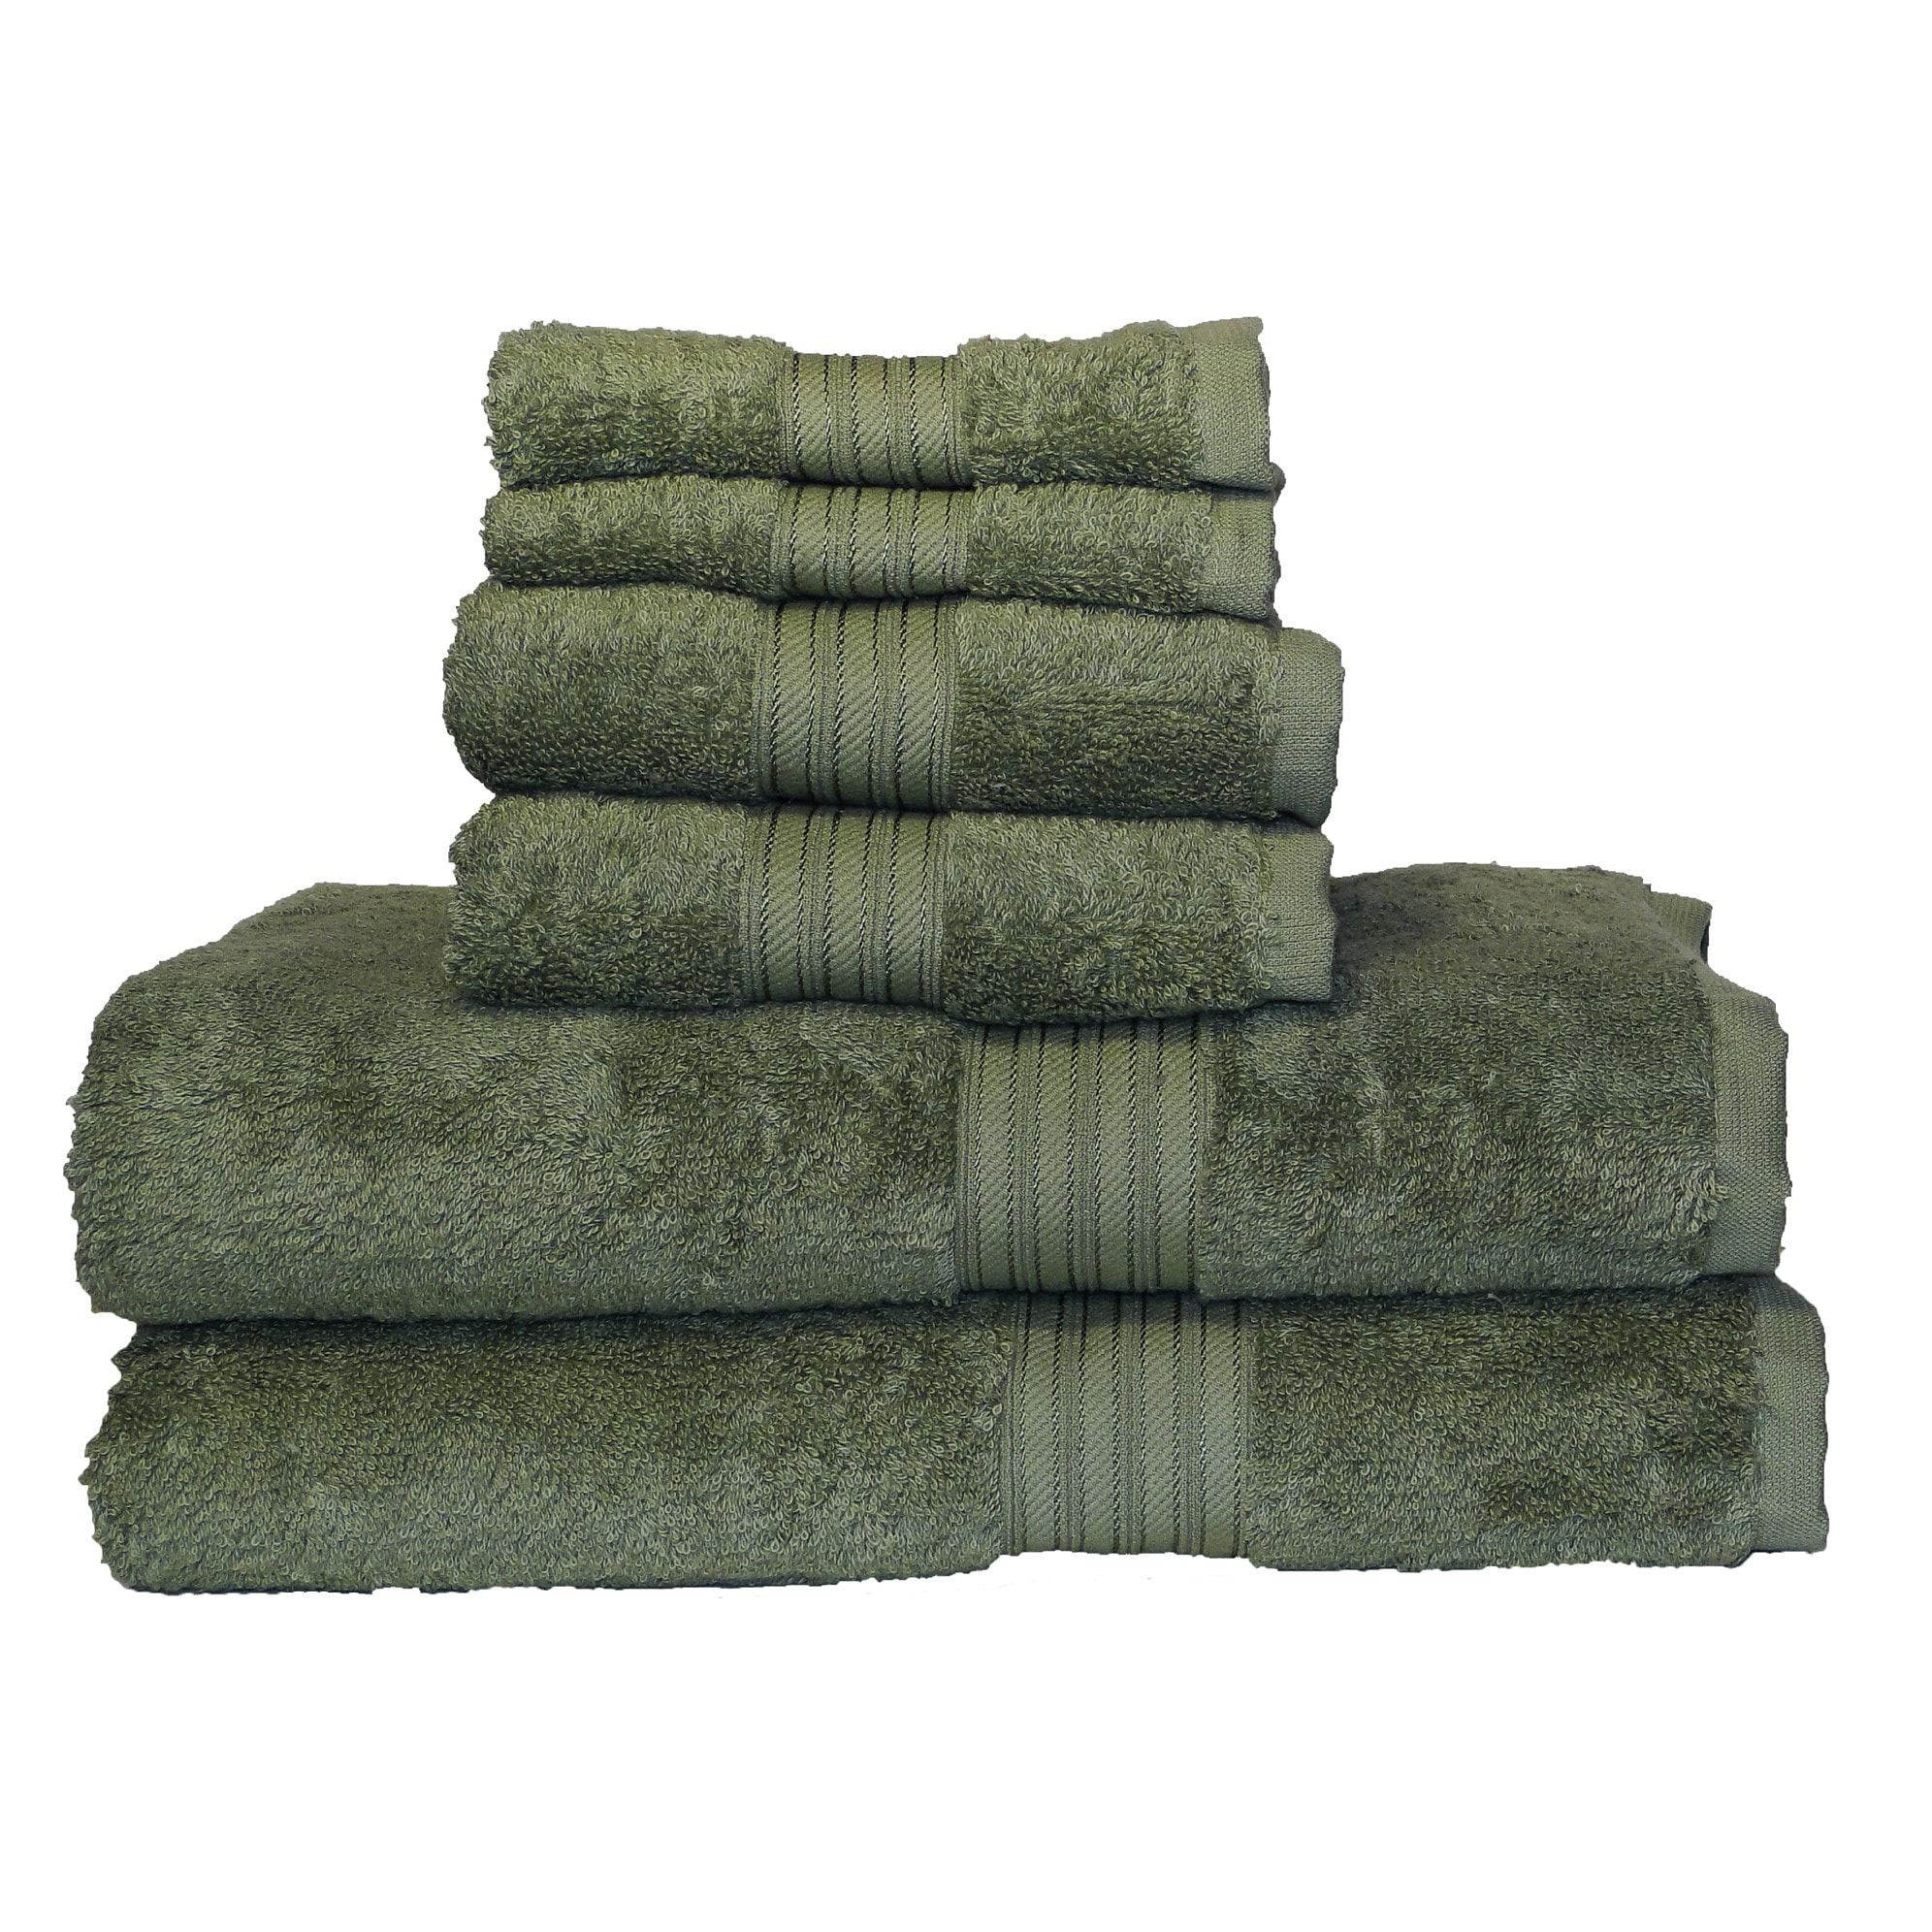  Lacoste Heritage Supima Cotton 6-Piece Towel Set, 2